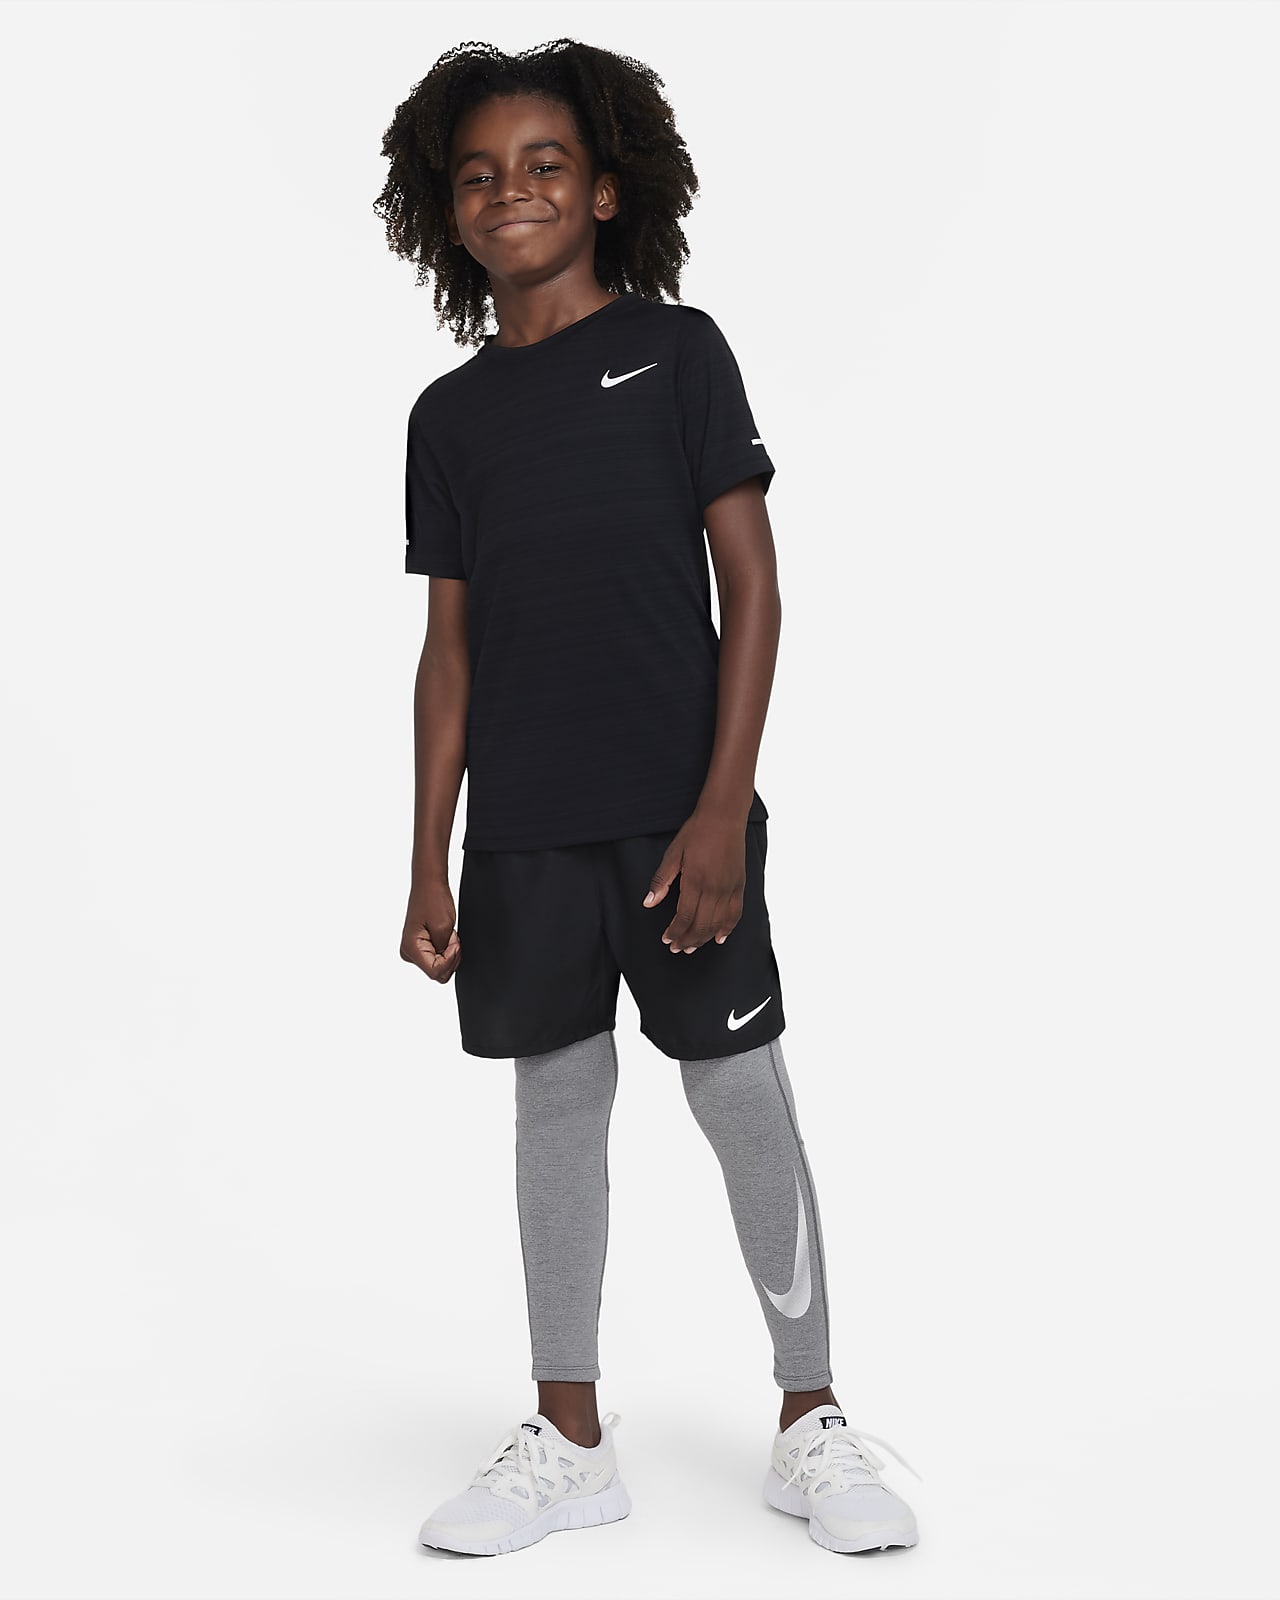 Nike Kids Pro 3/4 Tights (Little Kids/Big Kids)